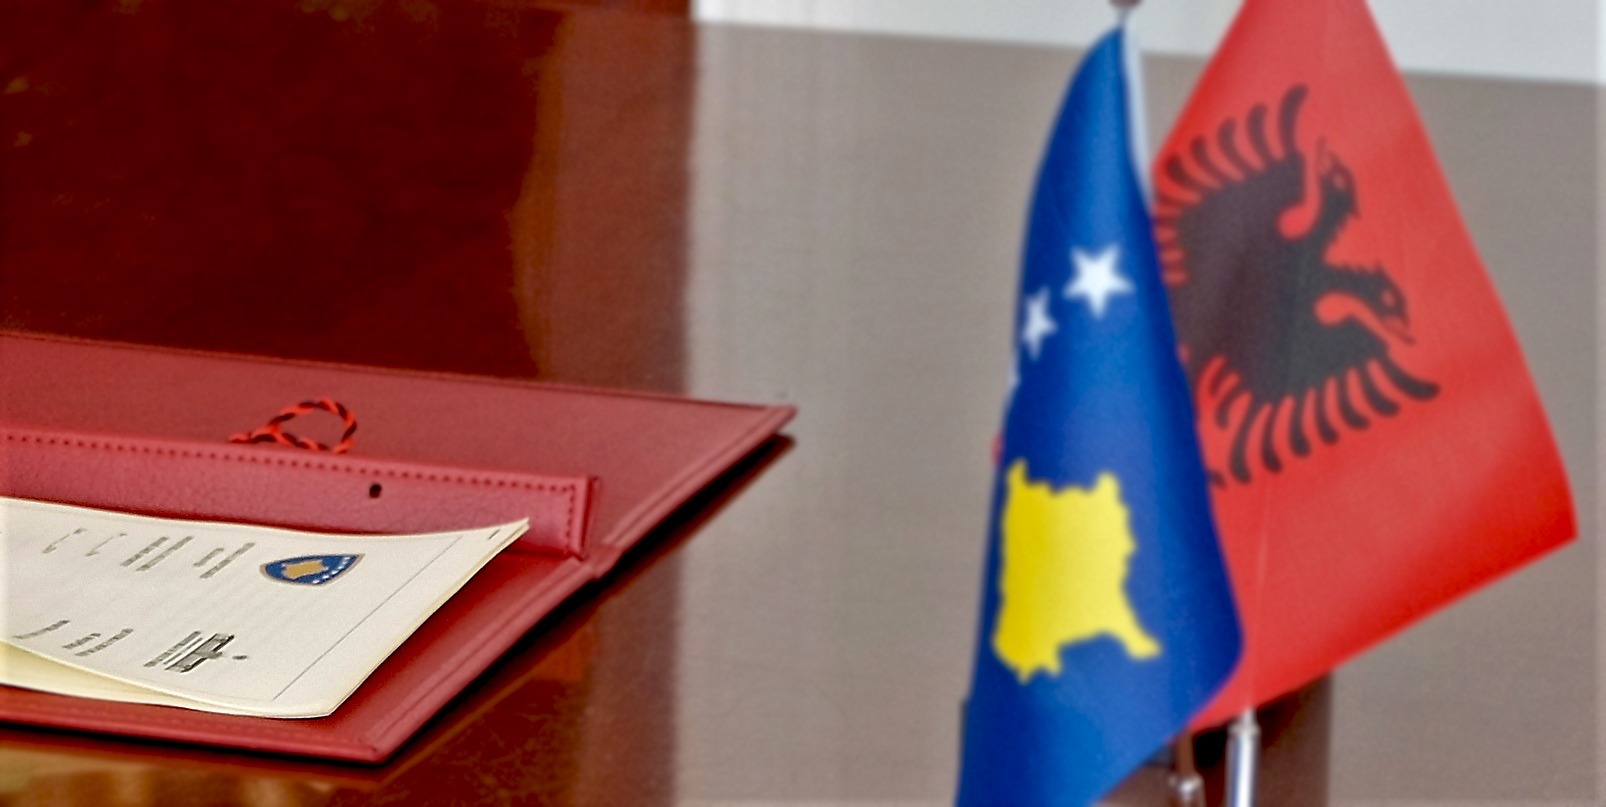 Zbardhet agjenda për mbledhjen e përbashkët Shqipëri – Kosovë